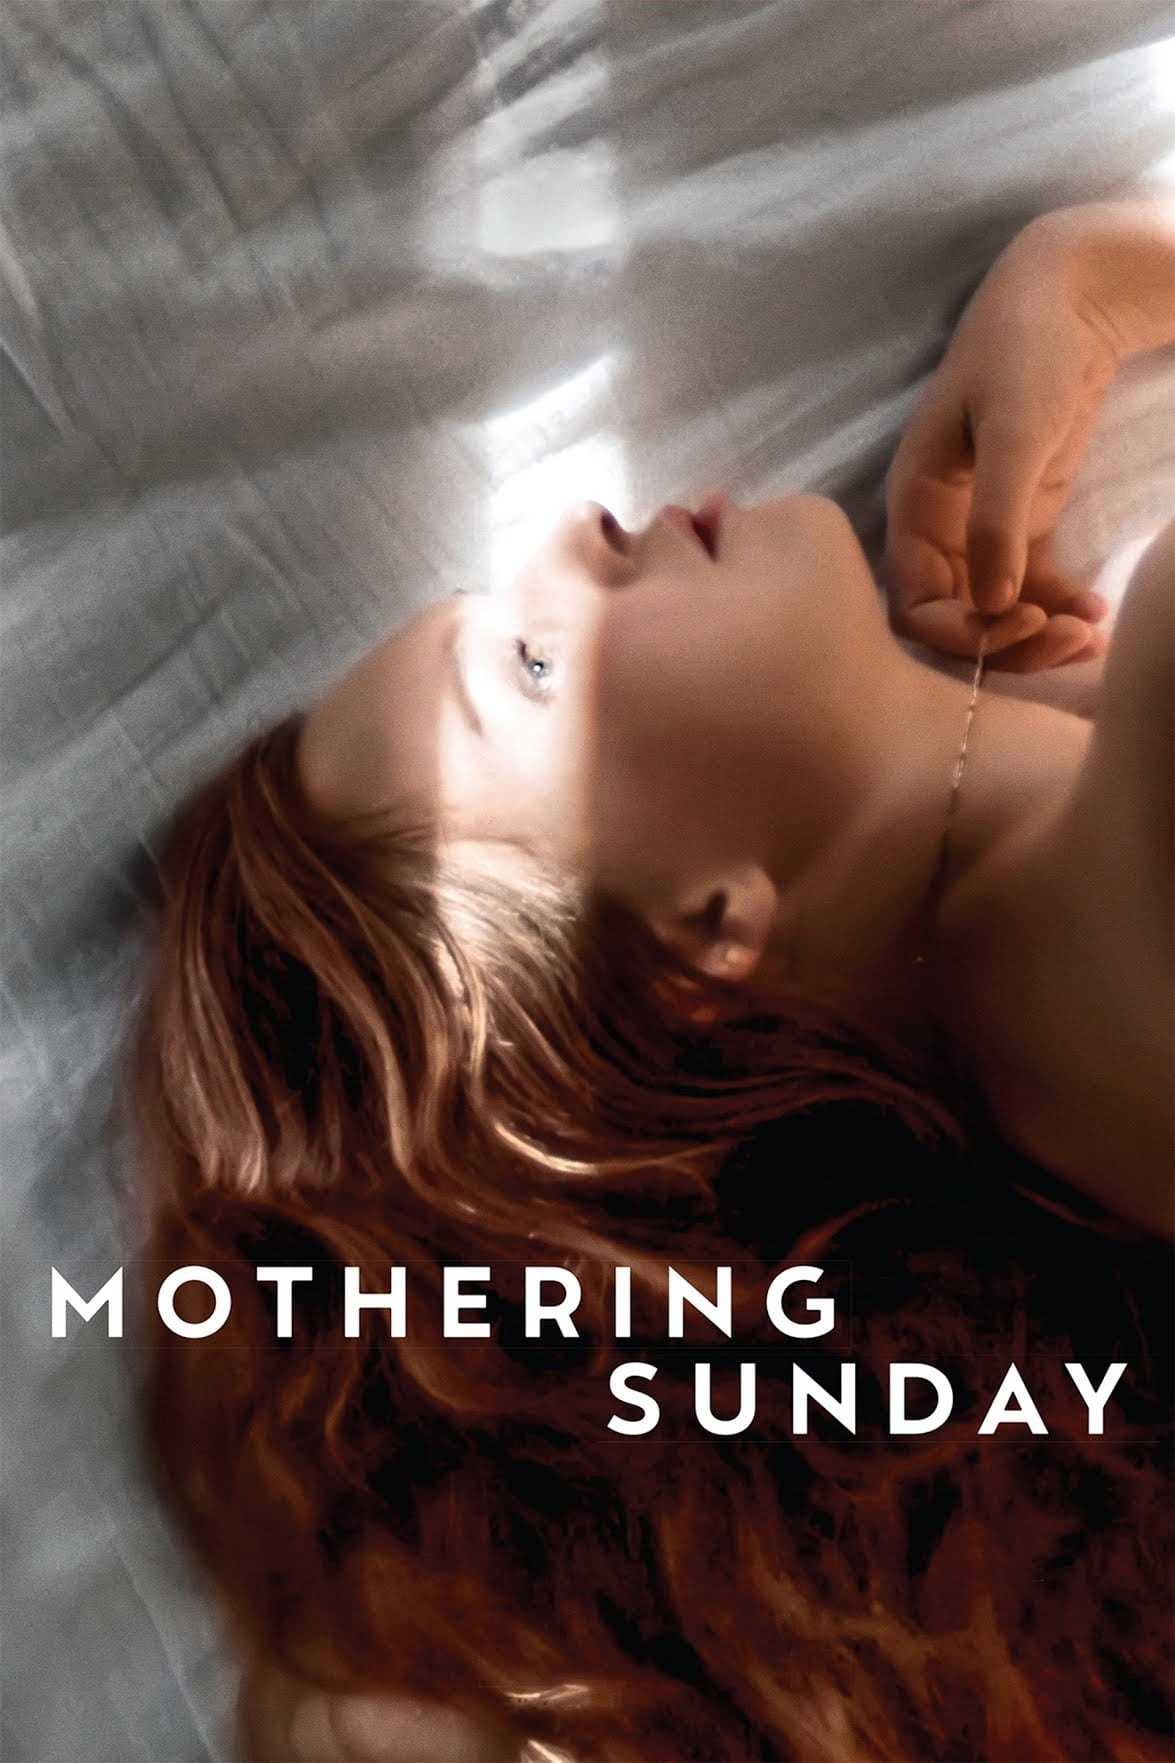 Mothering sunday - Mothering sunday